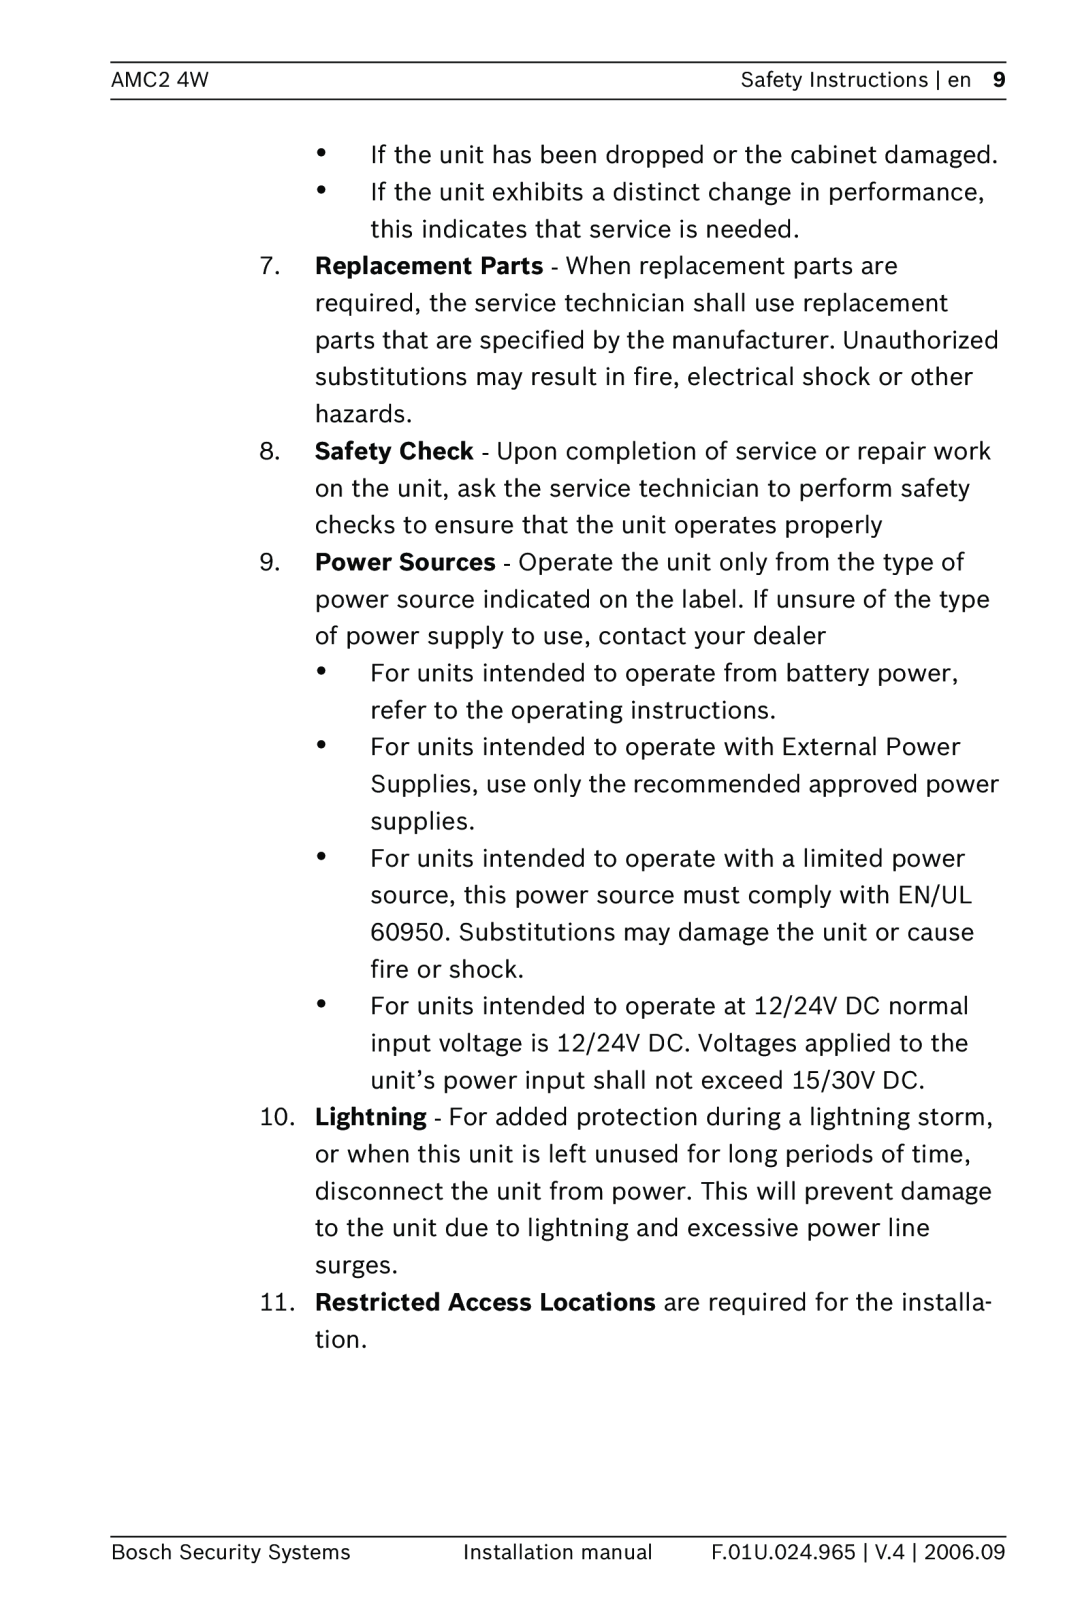 Bosch Appliances APC-AMC2-4WUS AMC2 4W, Safety Instructions en, Bosch Security Systems, Installation manual, F.01U.024.965 